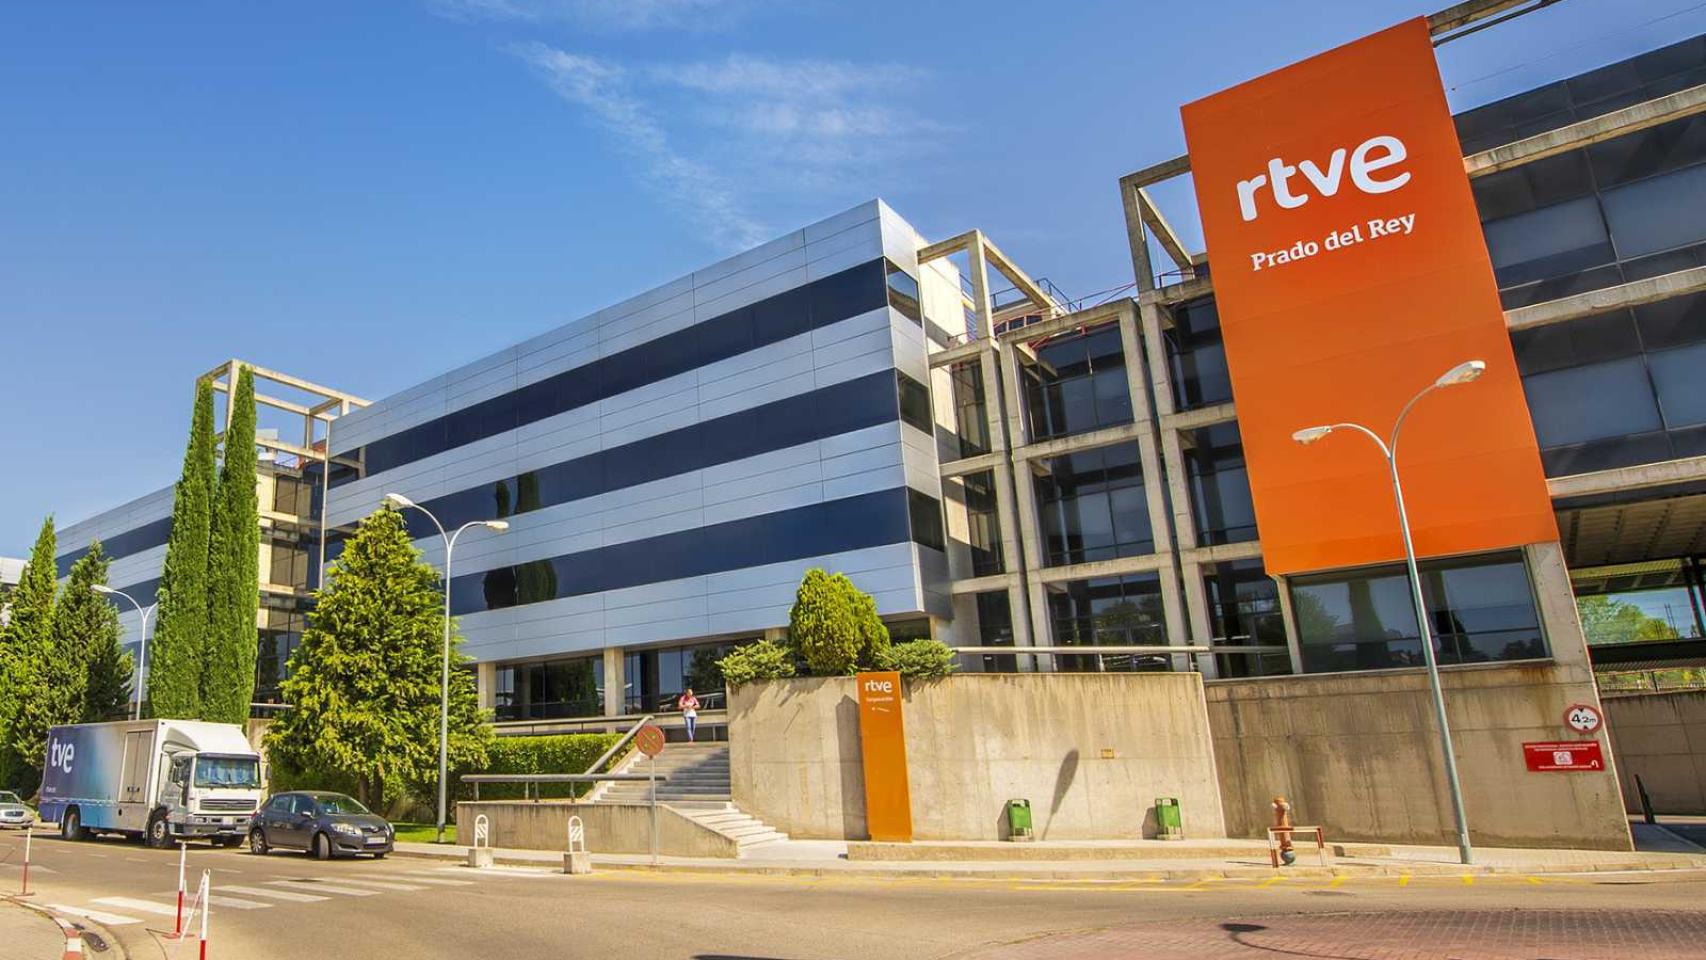 RTVE presenta una prueba pionera de emisión y recepción en Ultra